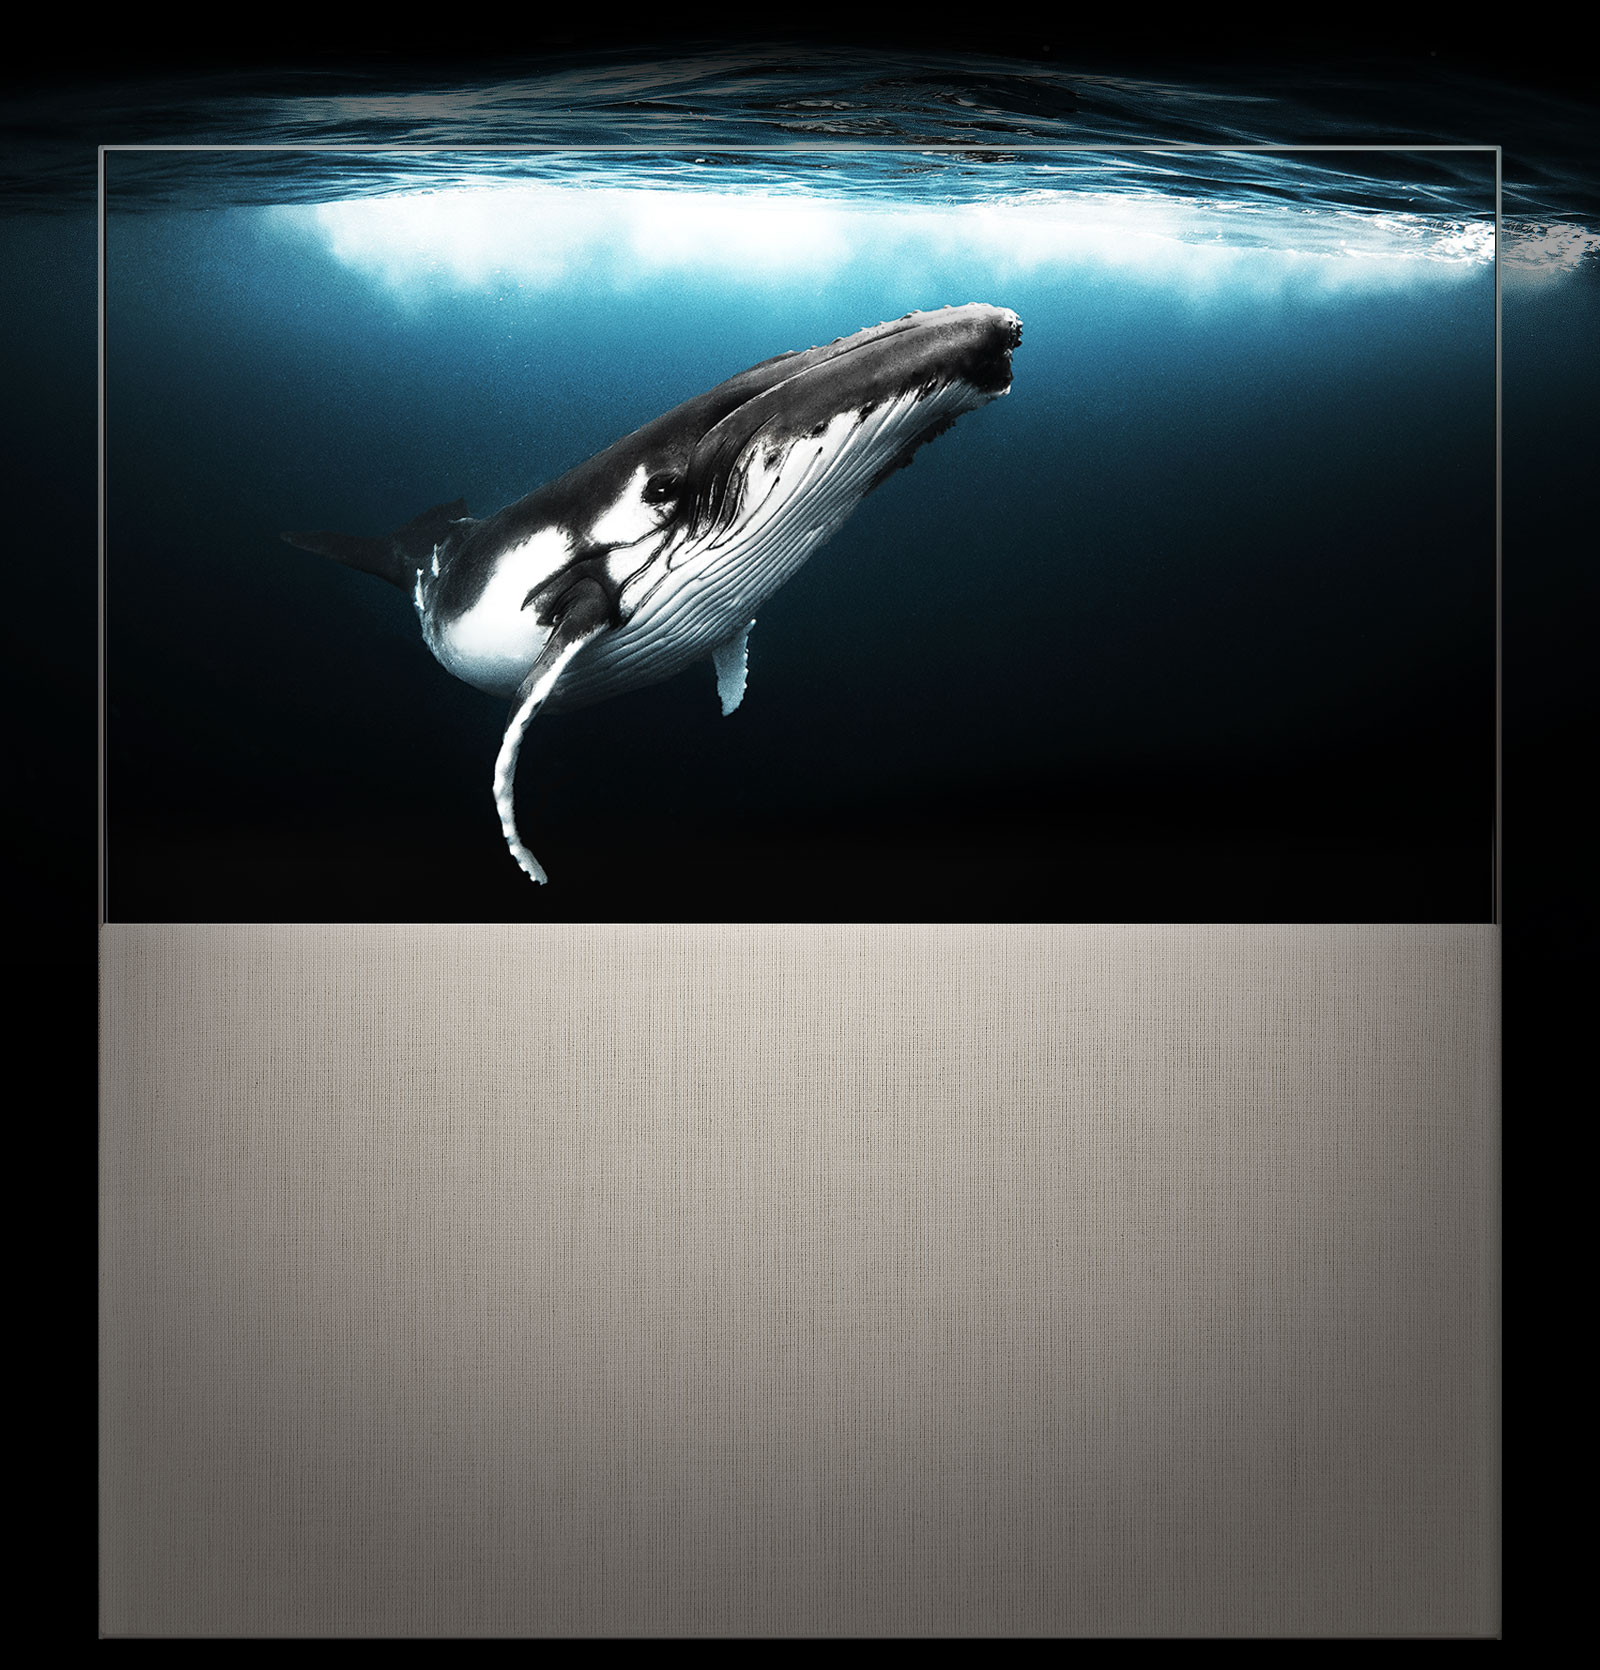 EASEL en mode Full View affichant une baleine sous l’eau tandis que la lumière du soleil brille à la surface. L’image s’étend derrière le téléviseur, démontrant son côté immersif.